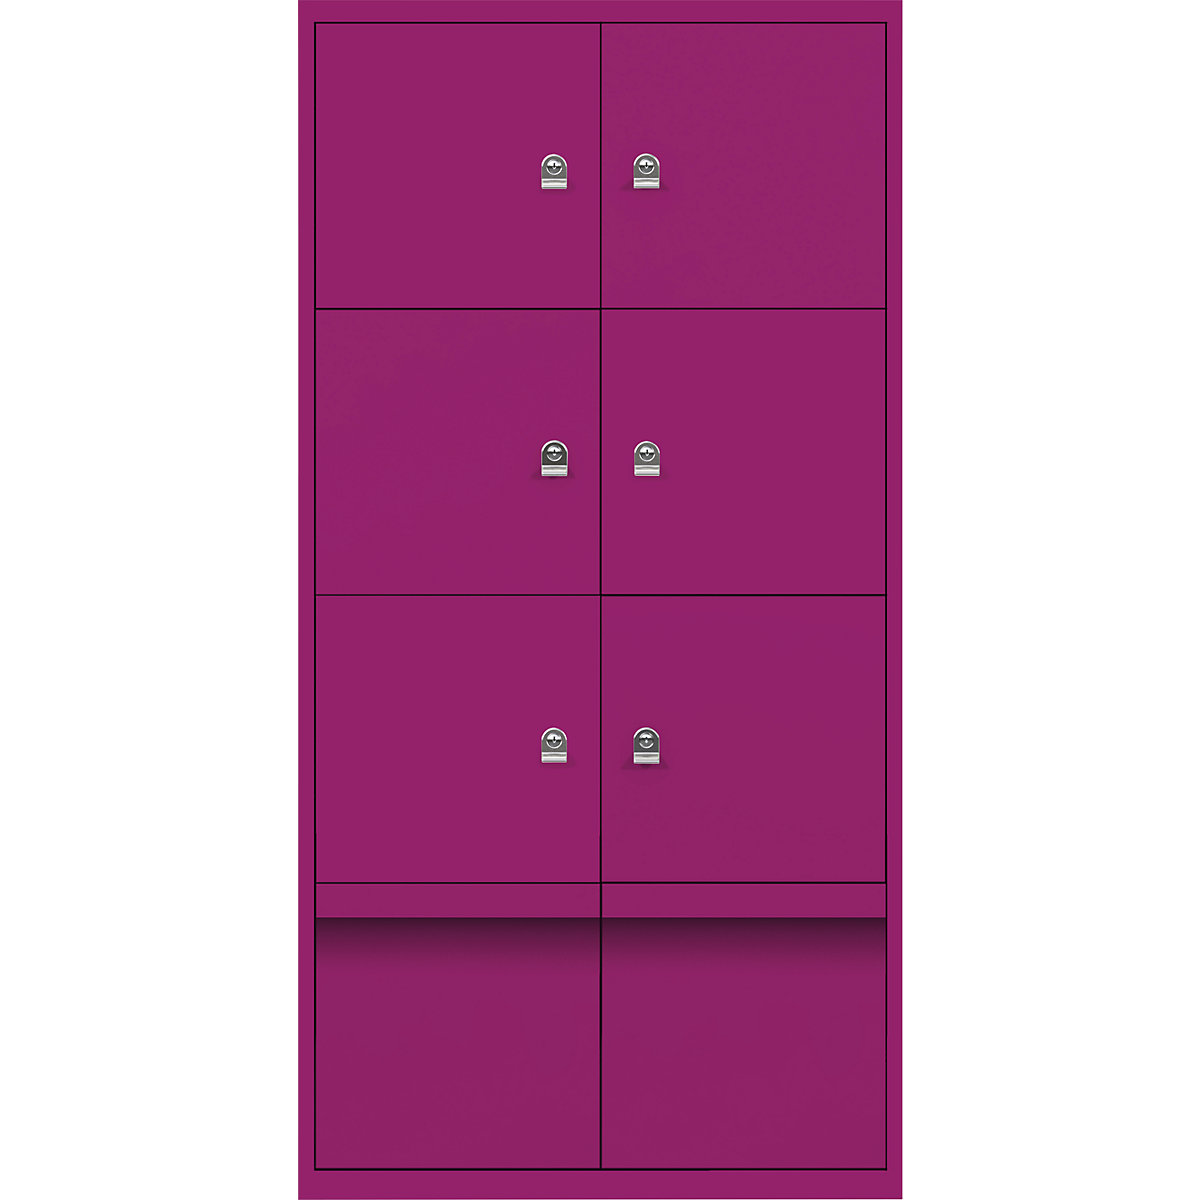 Omara s predelki z zaklepanjem LateralFile™ – BISLEY, 6 predelkov z zaklepanjem in 2 predala, višina po 375 mm, fuksija roza barve-22